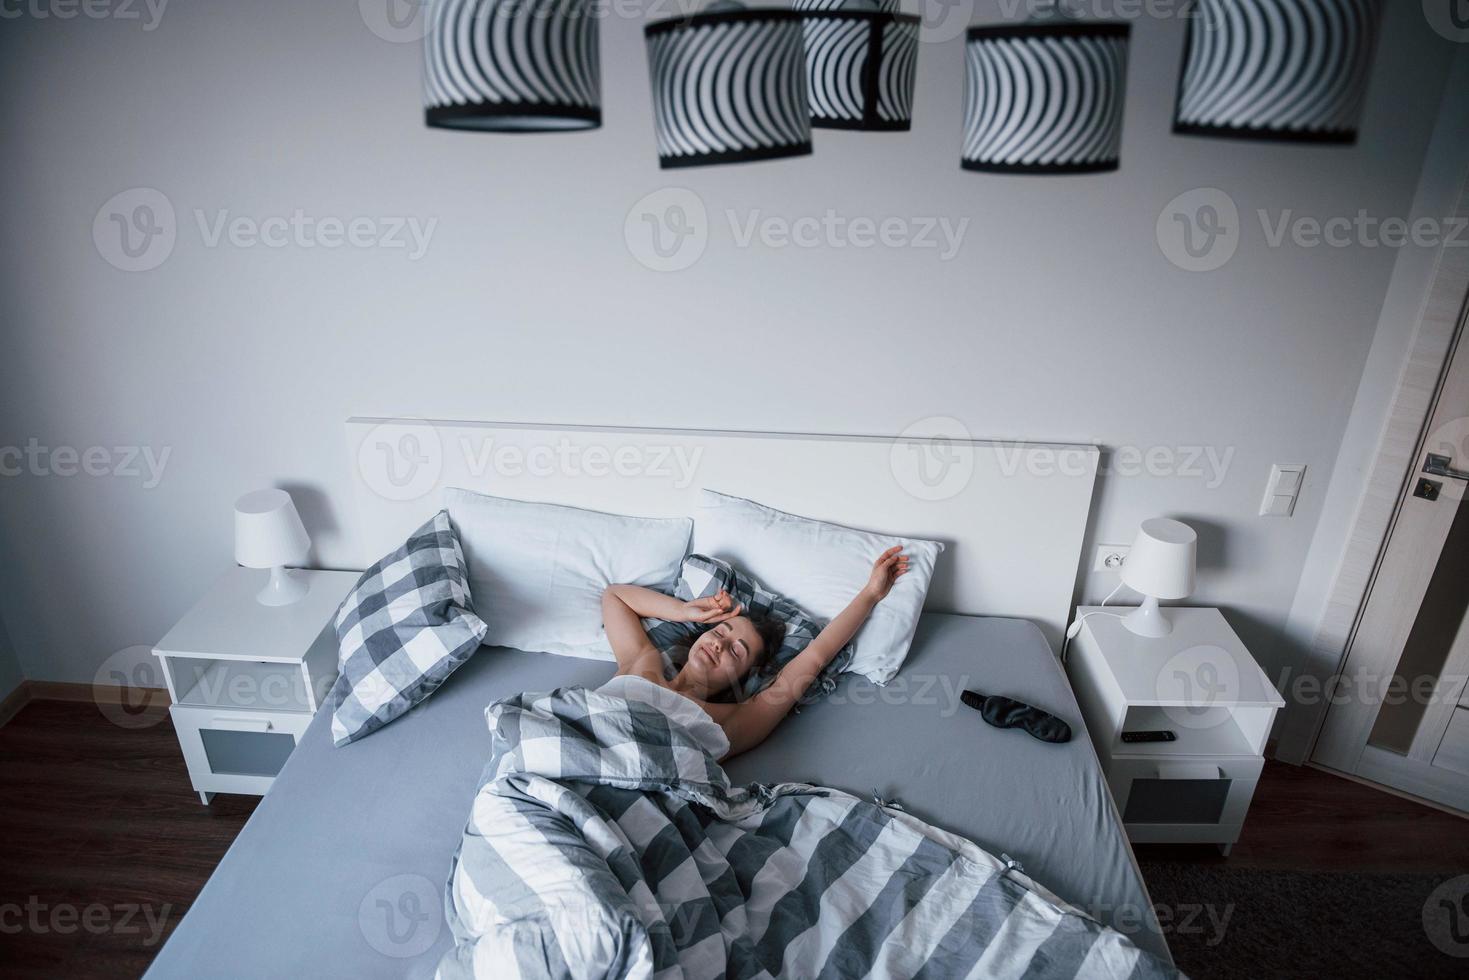 quarto estiloso. mulher com máscara de venda para dormir está deitada na cama na hora da manhã foto